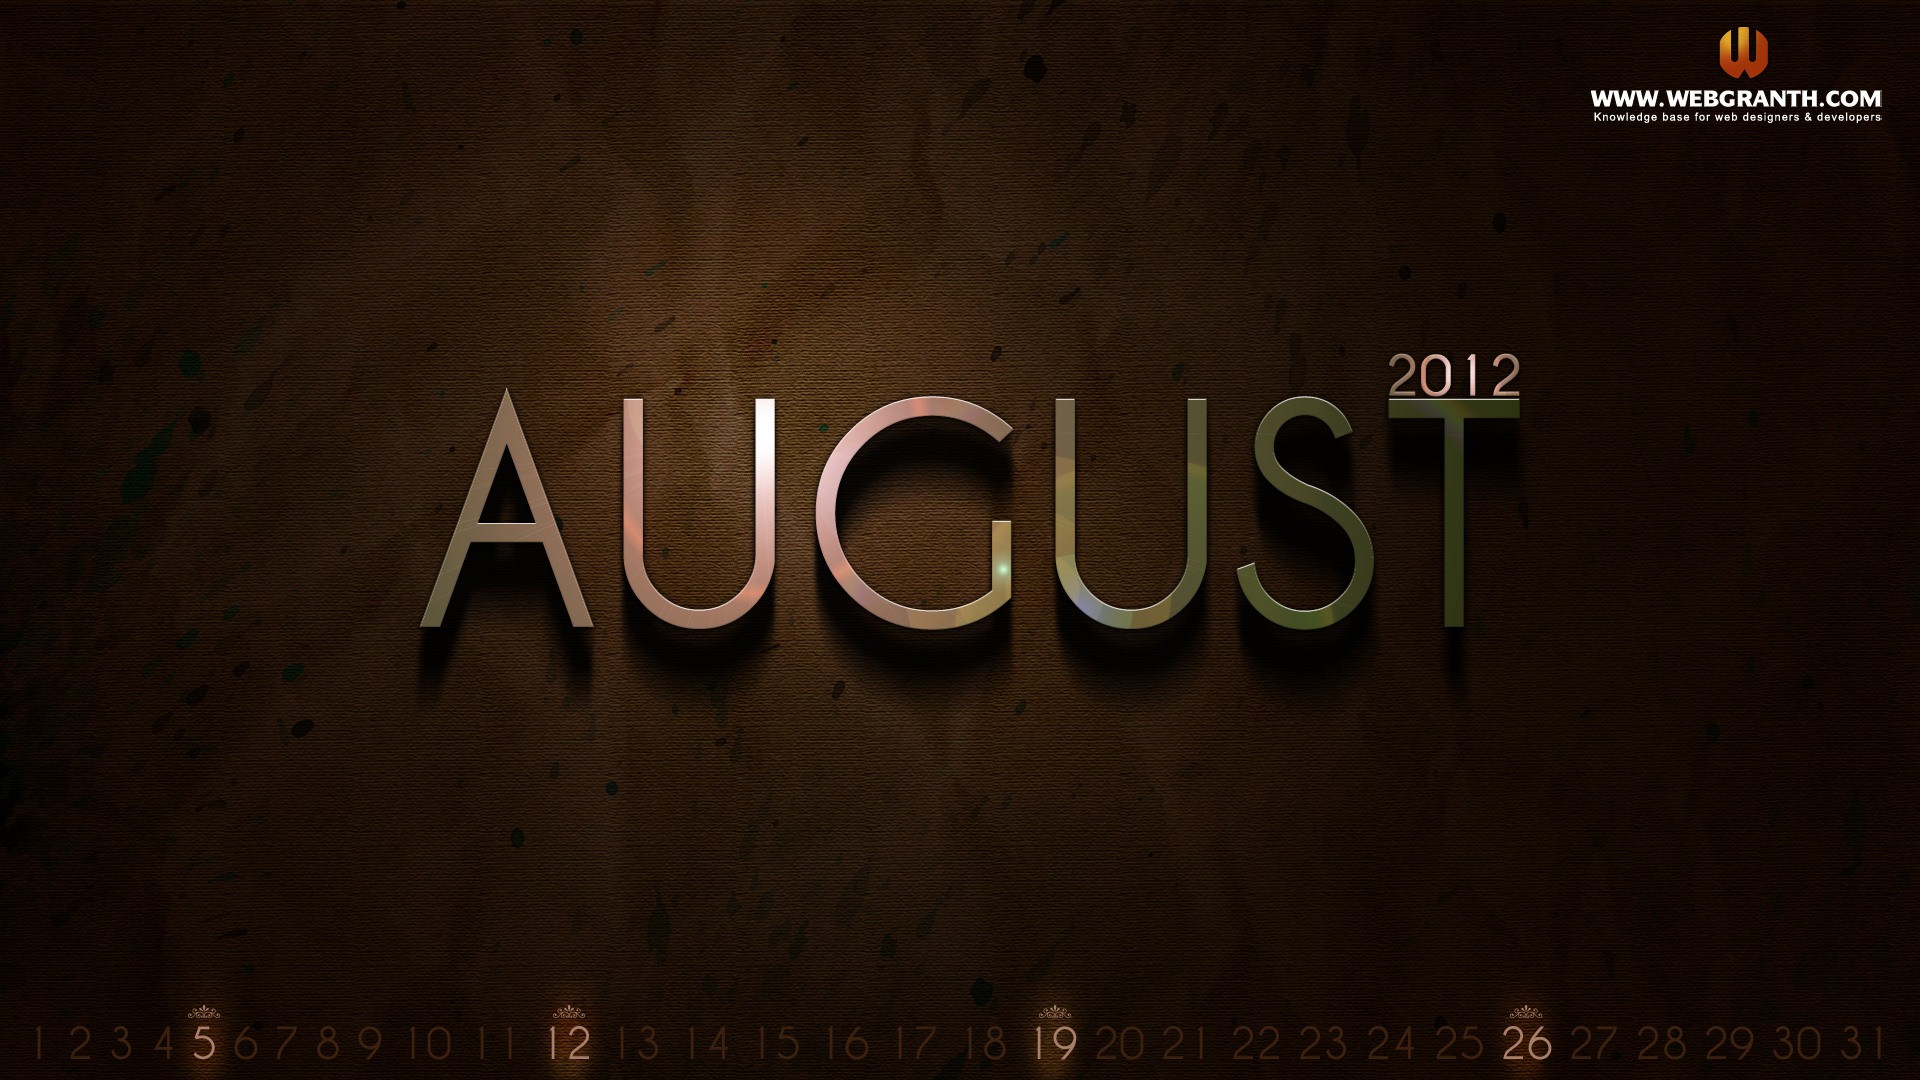 August 2012 Calendar wallpapers (1) #7 - 1920x1080